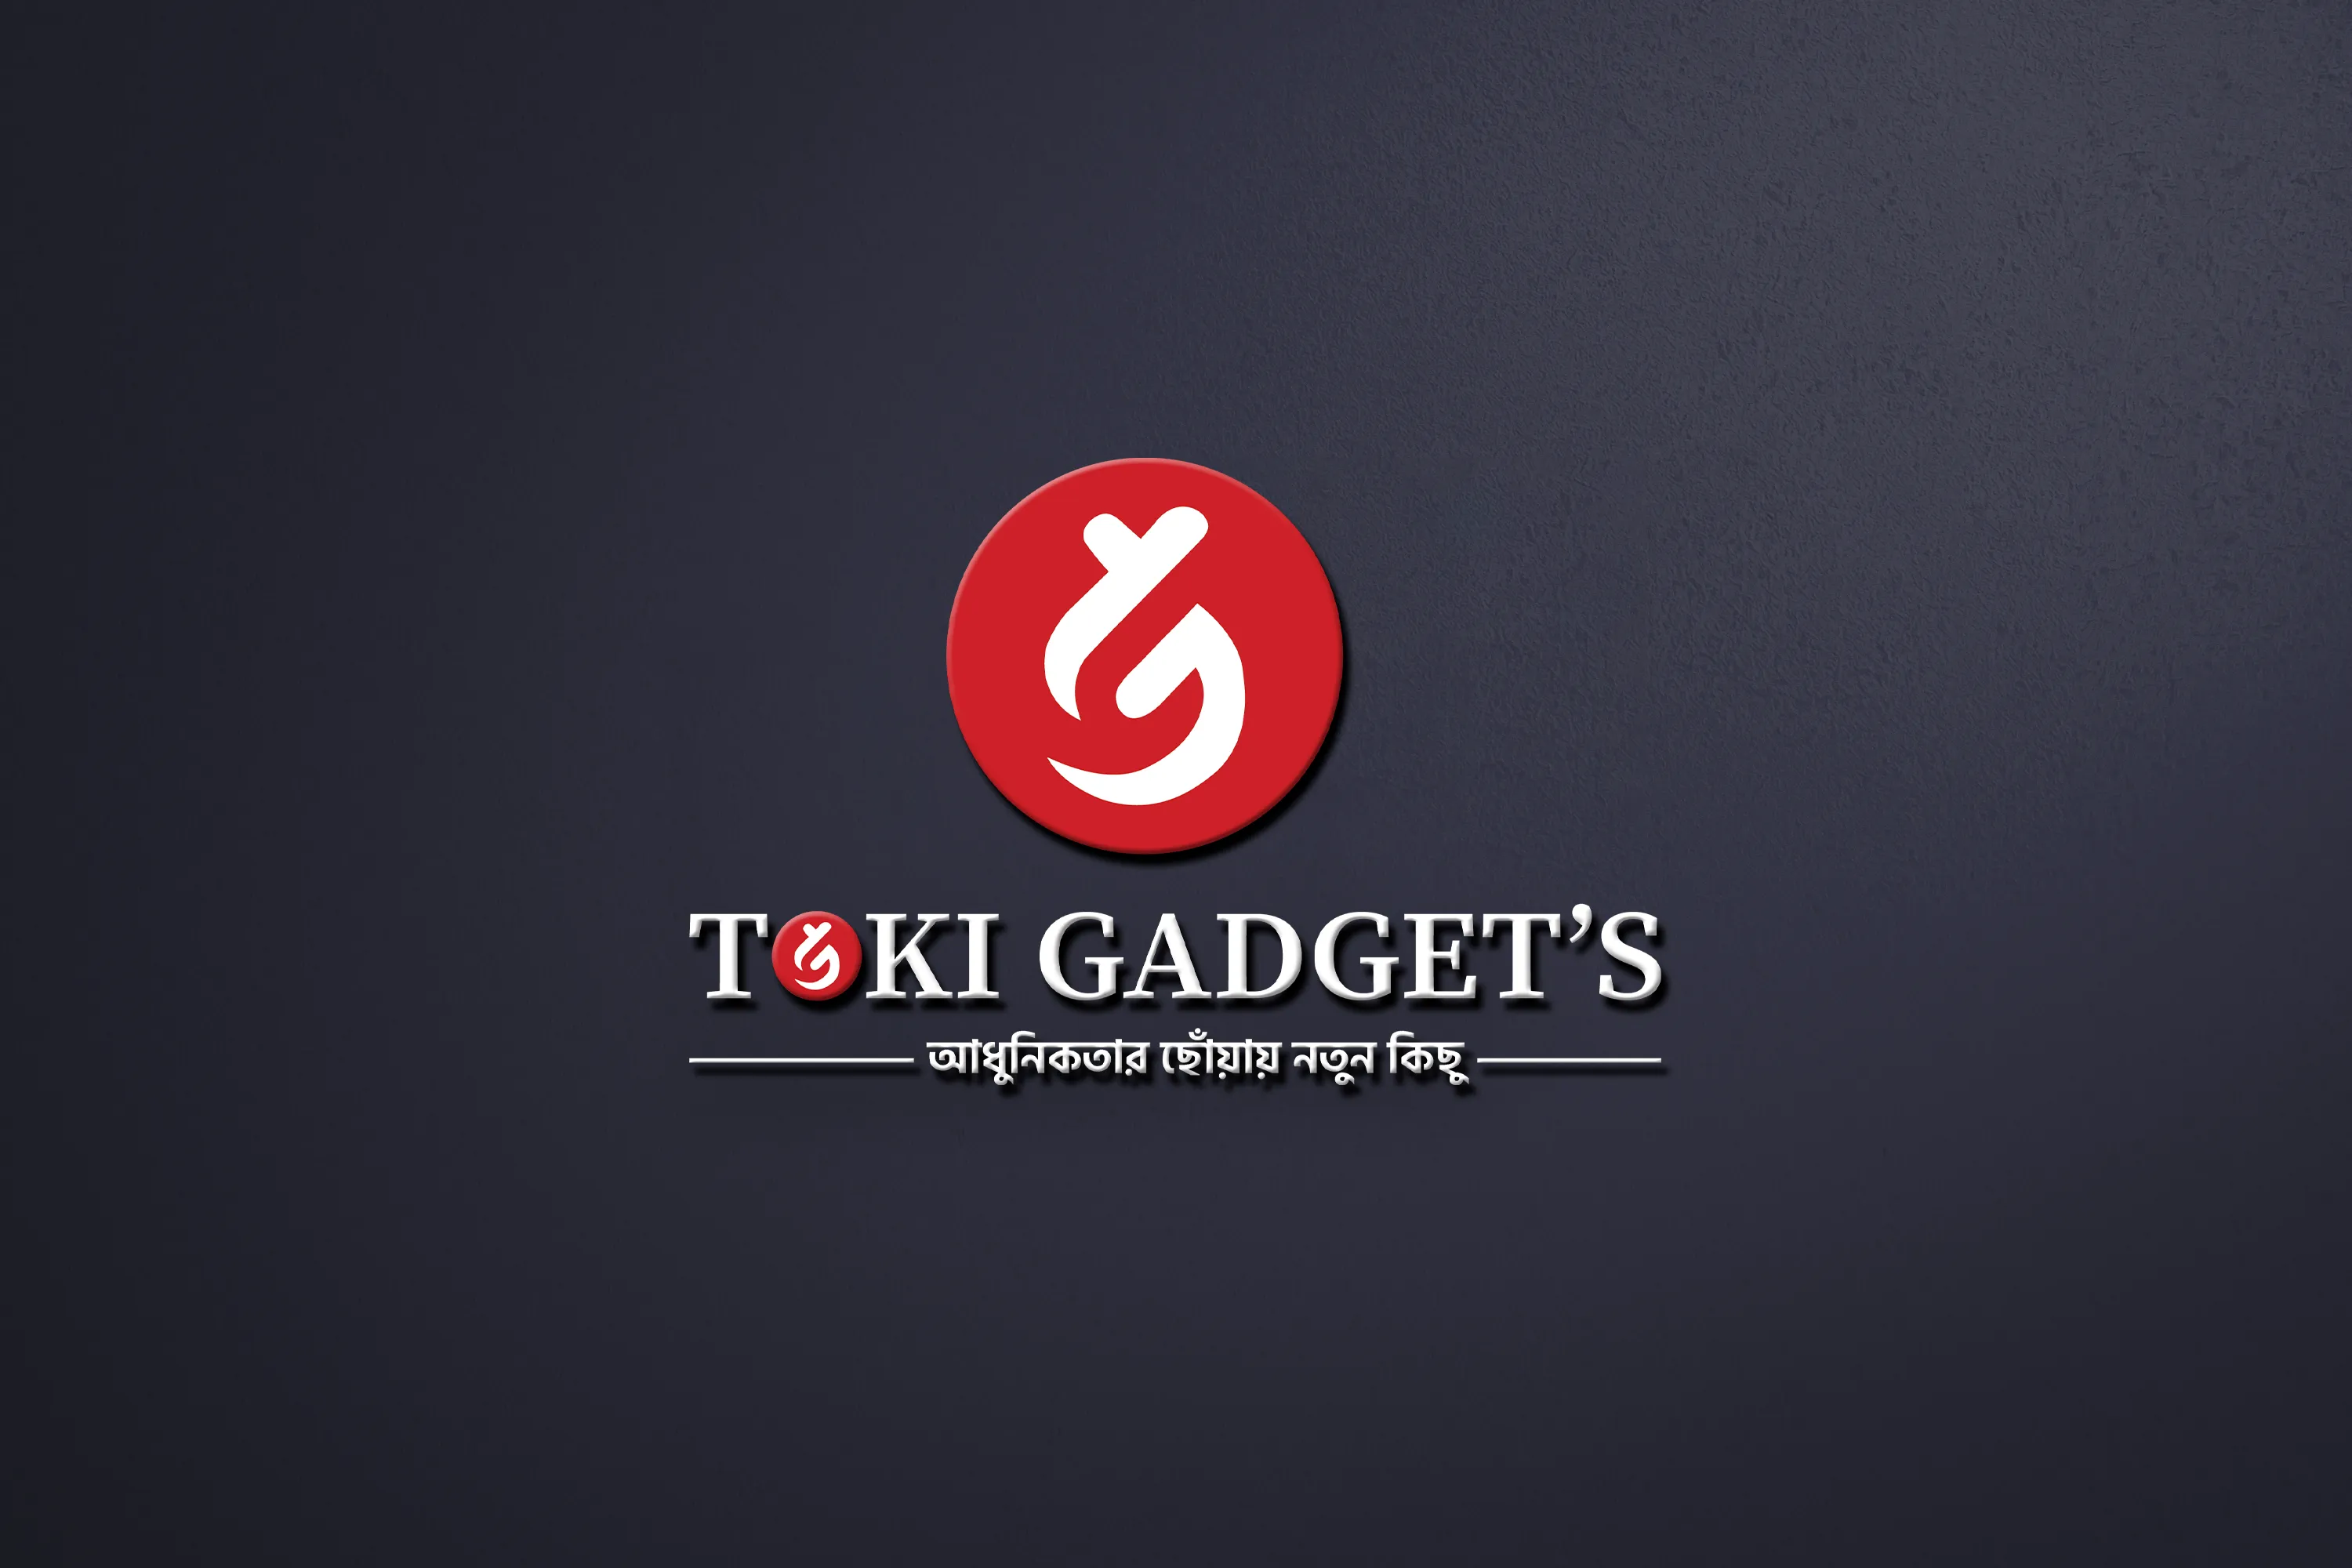 Toki Gadgets Ltd